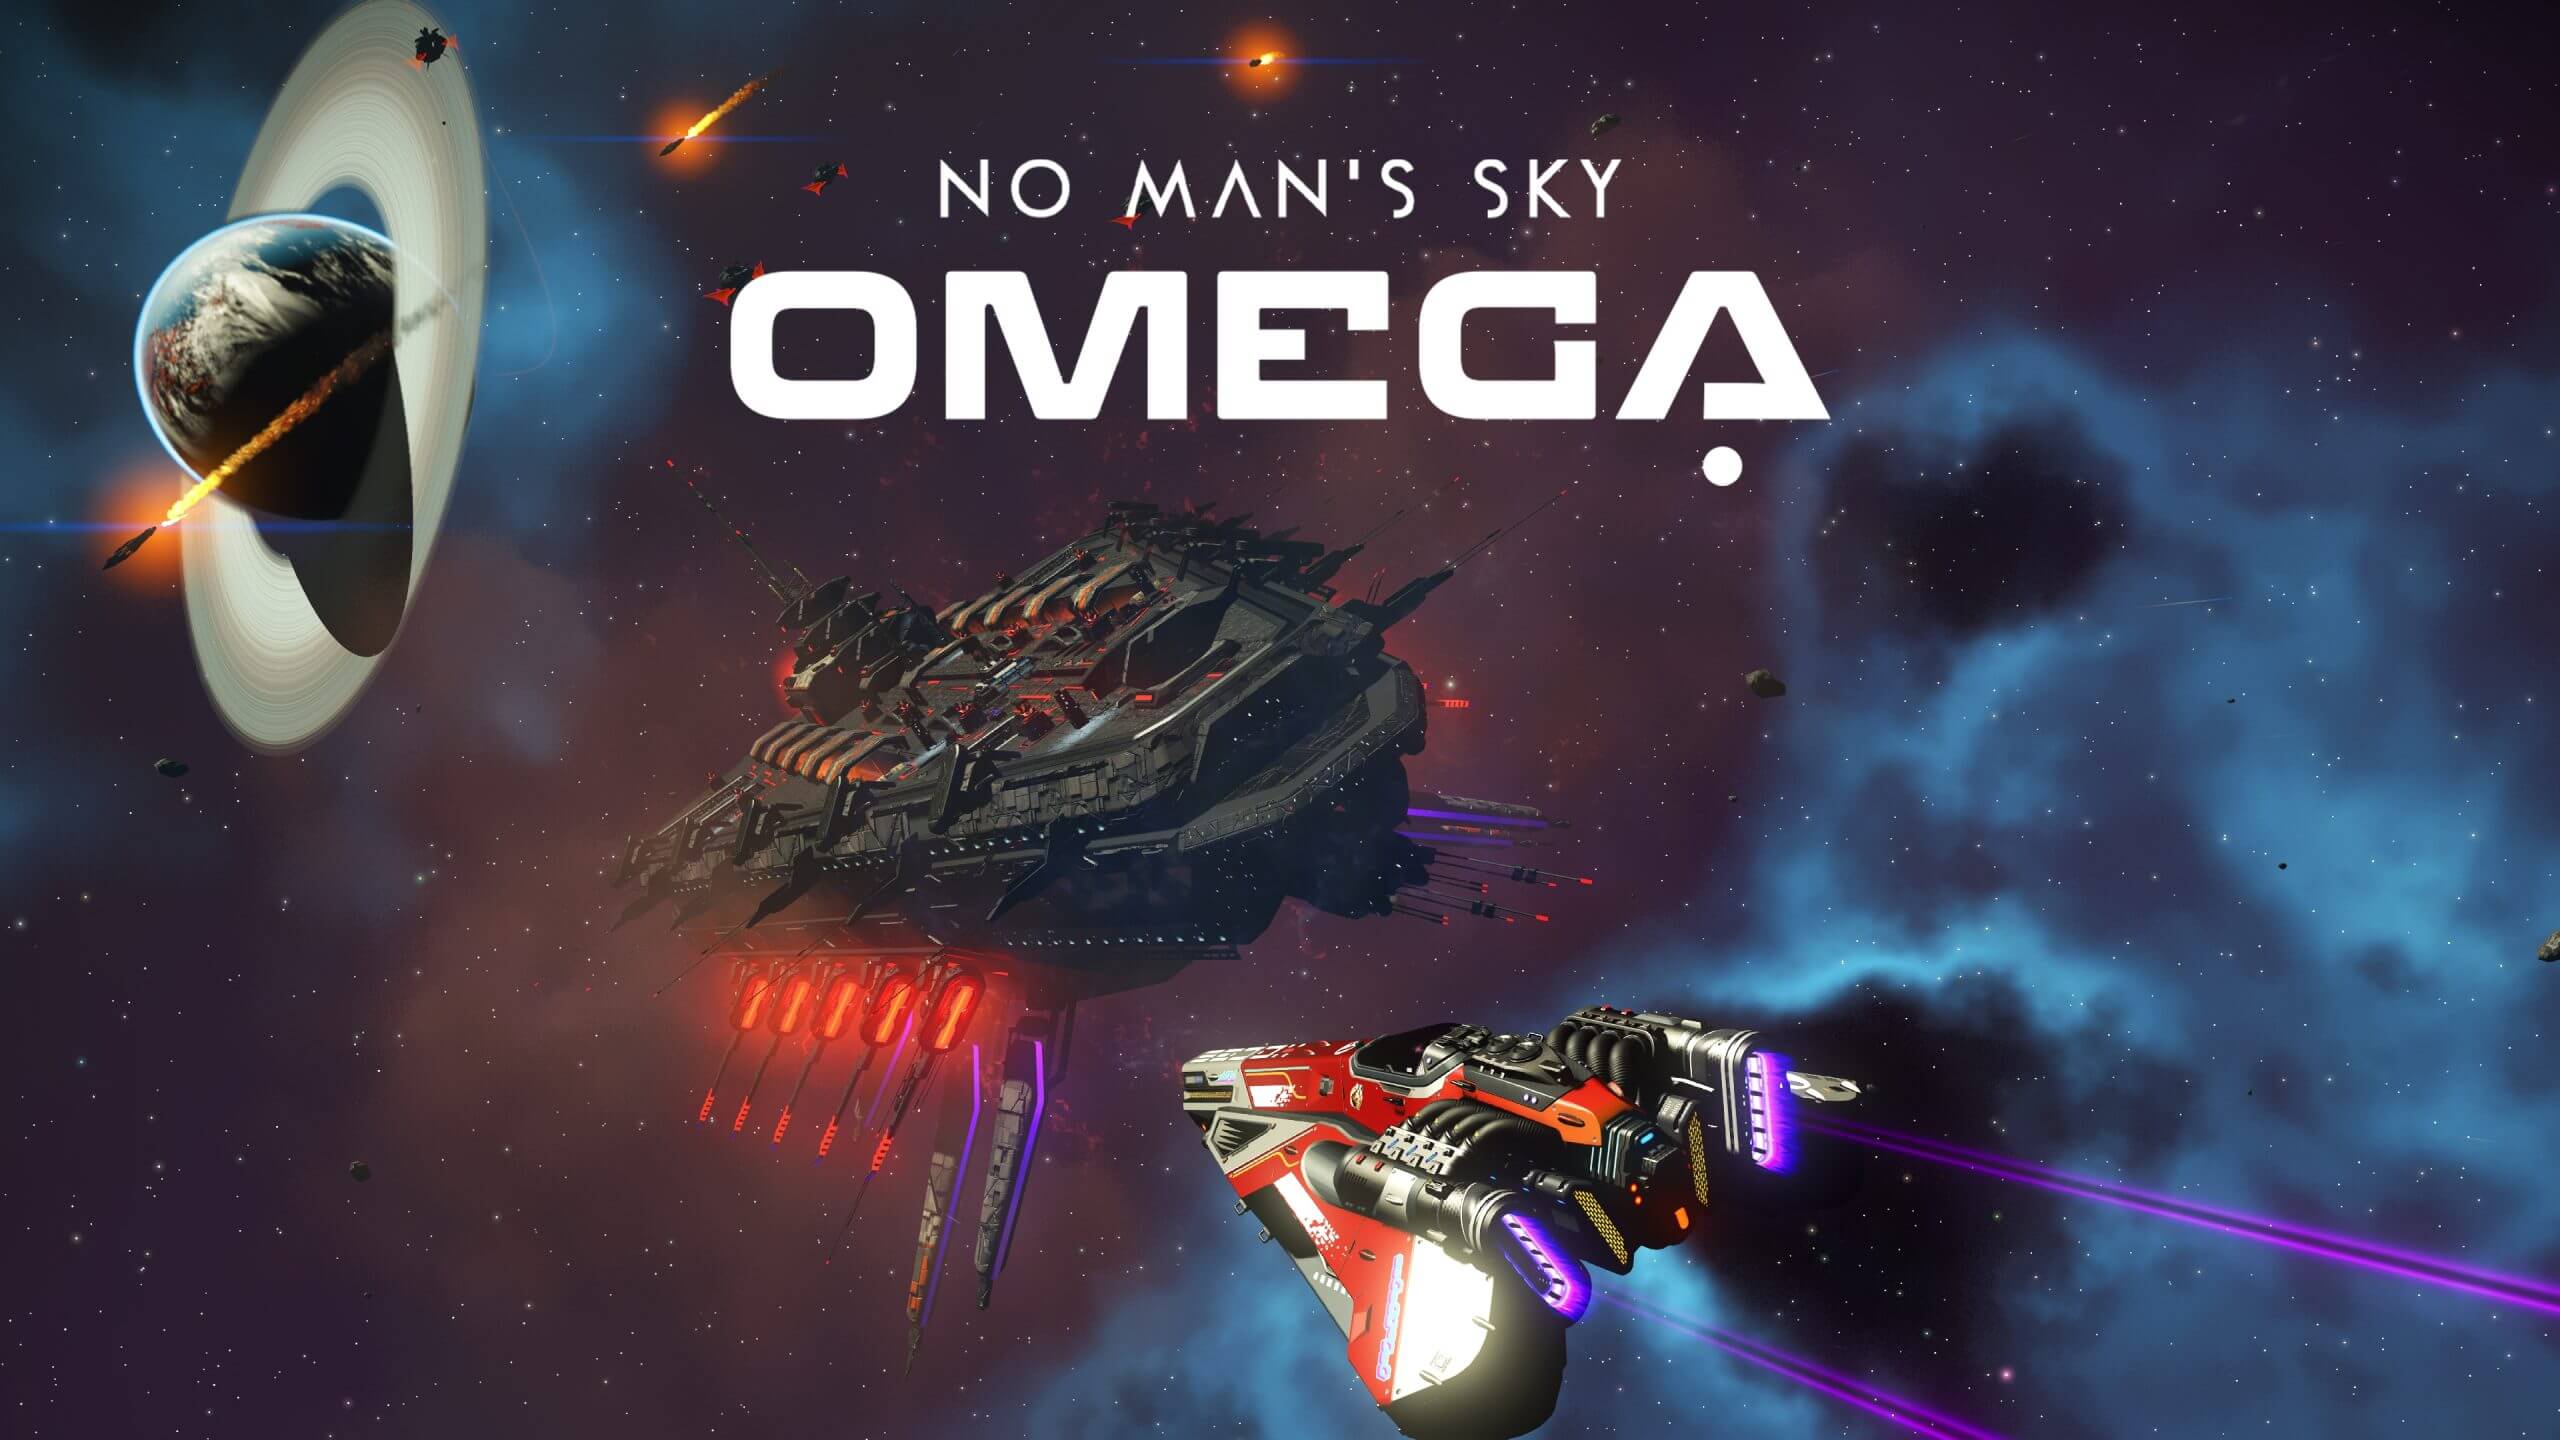 No Man's Sky Omega Update erschienen jeder darf es spielen